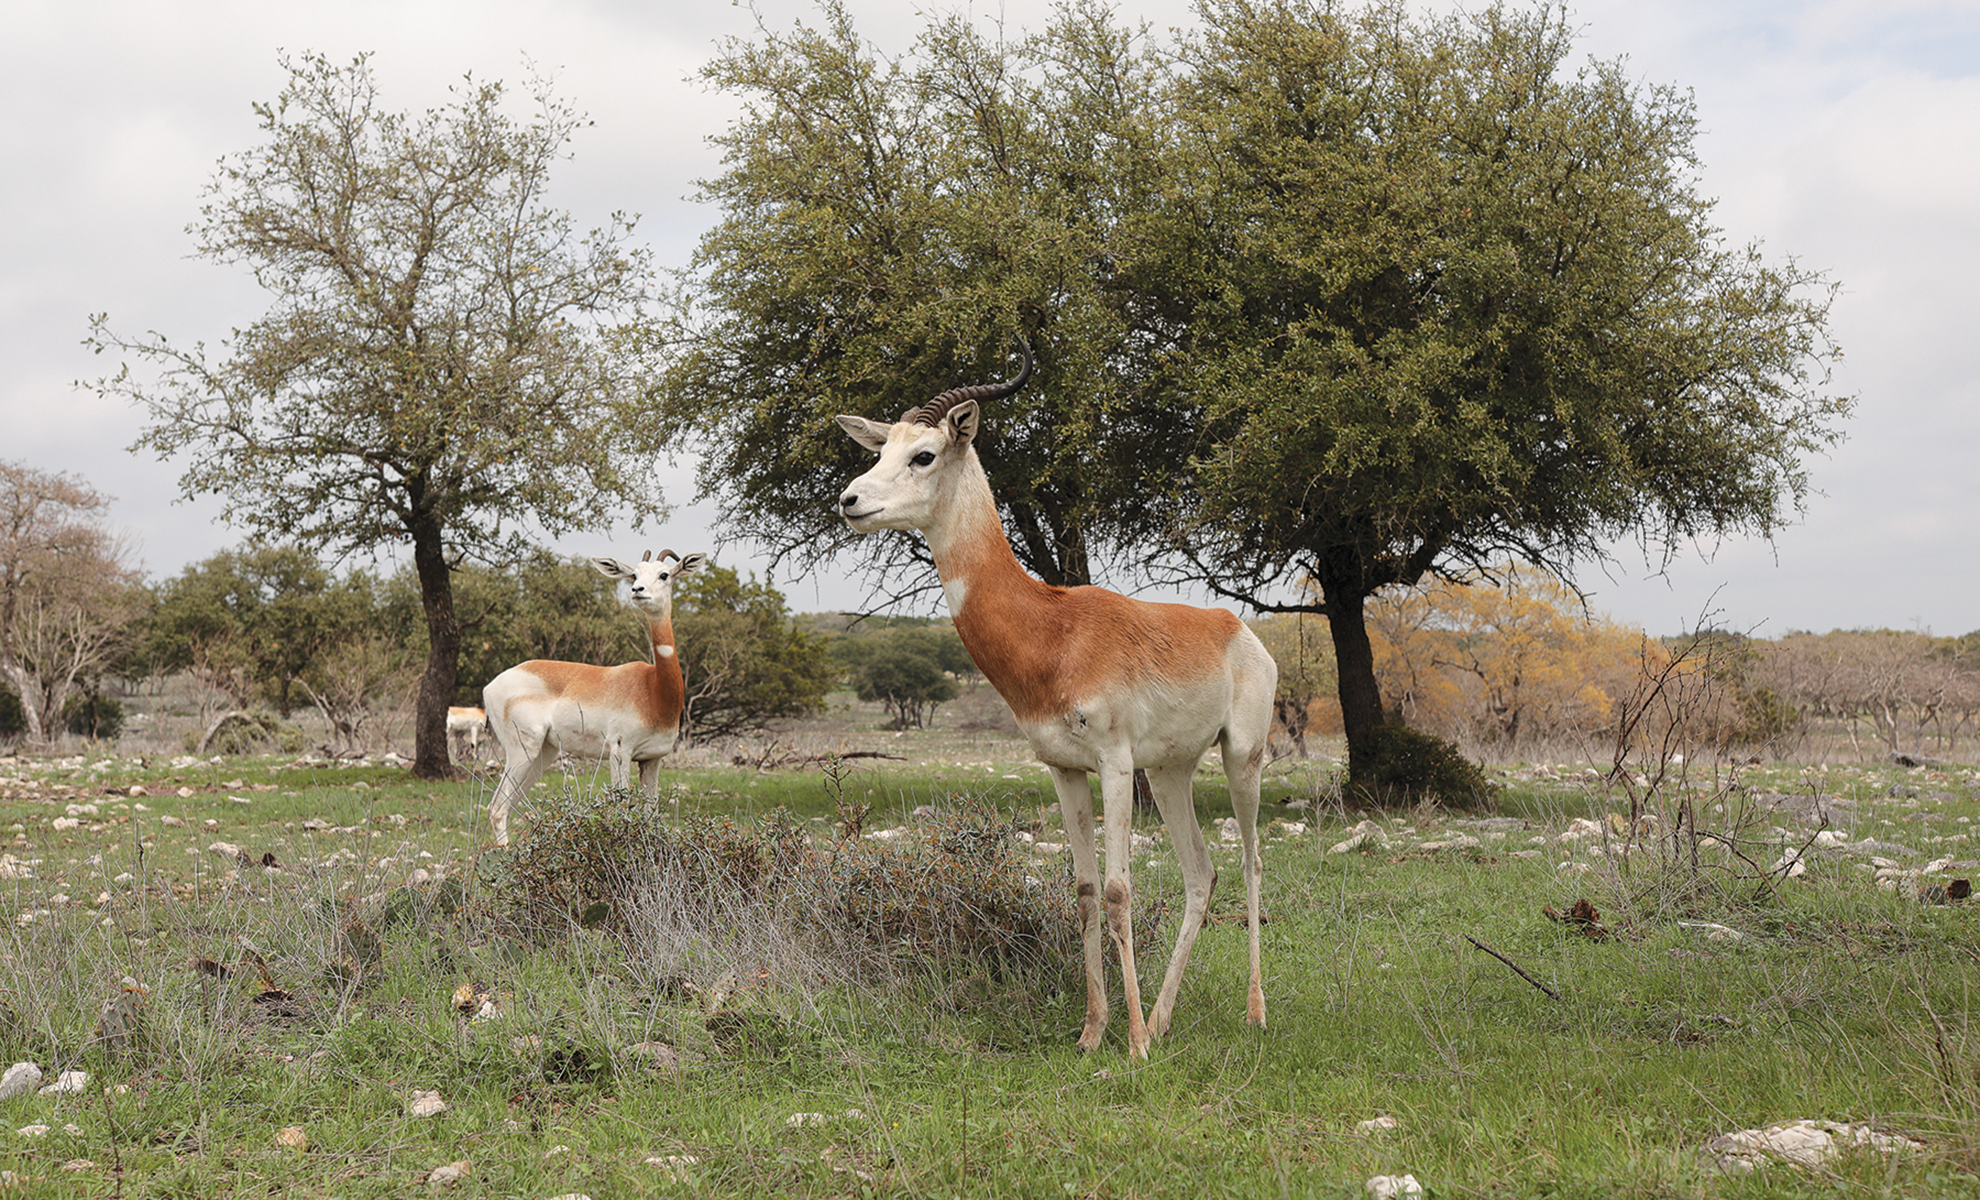 Llama and dama gazelle at the Y.O. Ranch Headquarters.